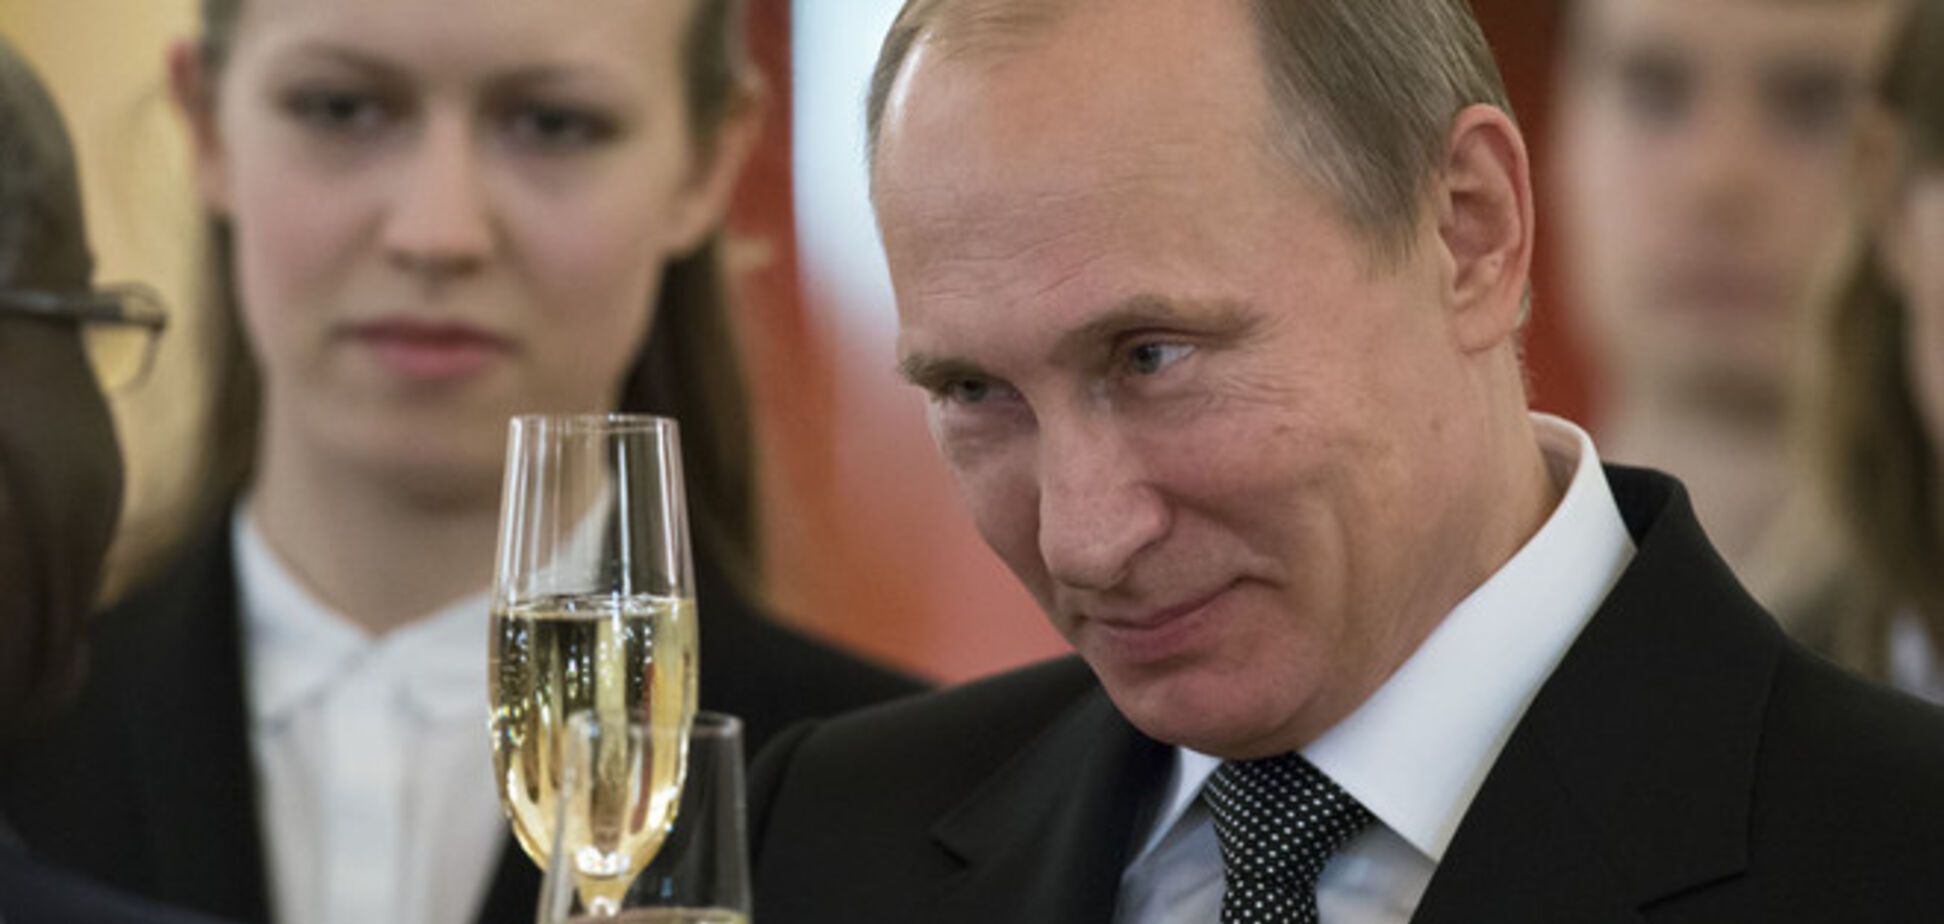 Рейтинг Путіна впав вдруге з початку анексії Криму